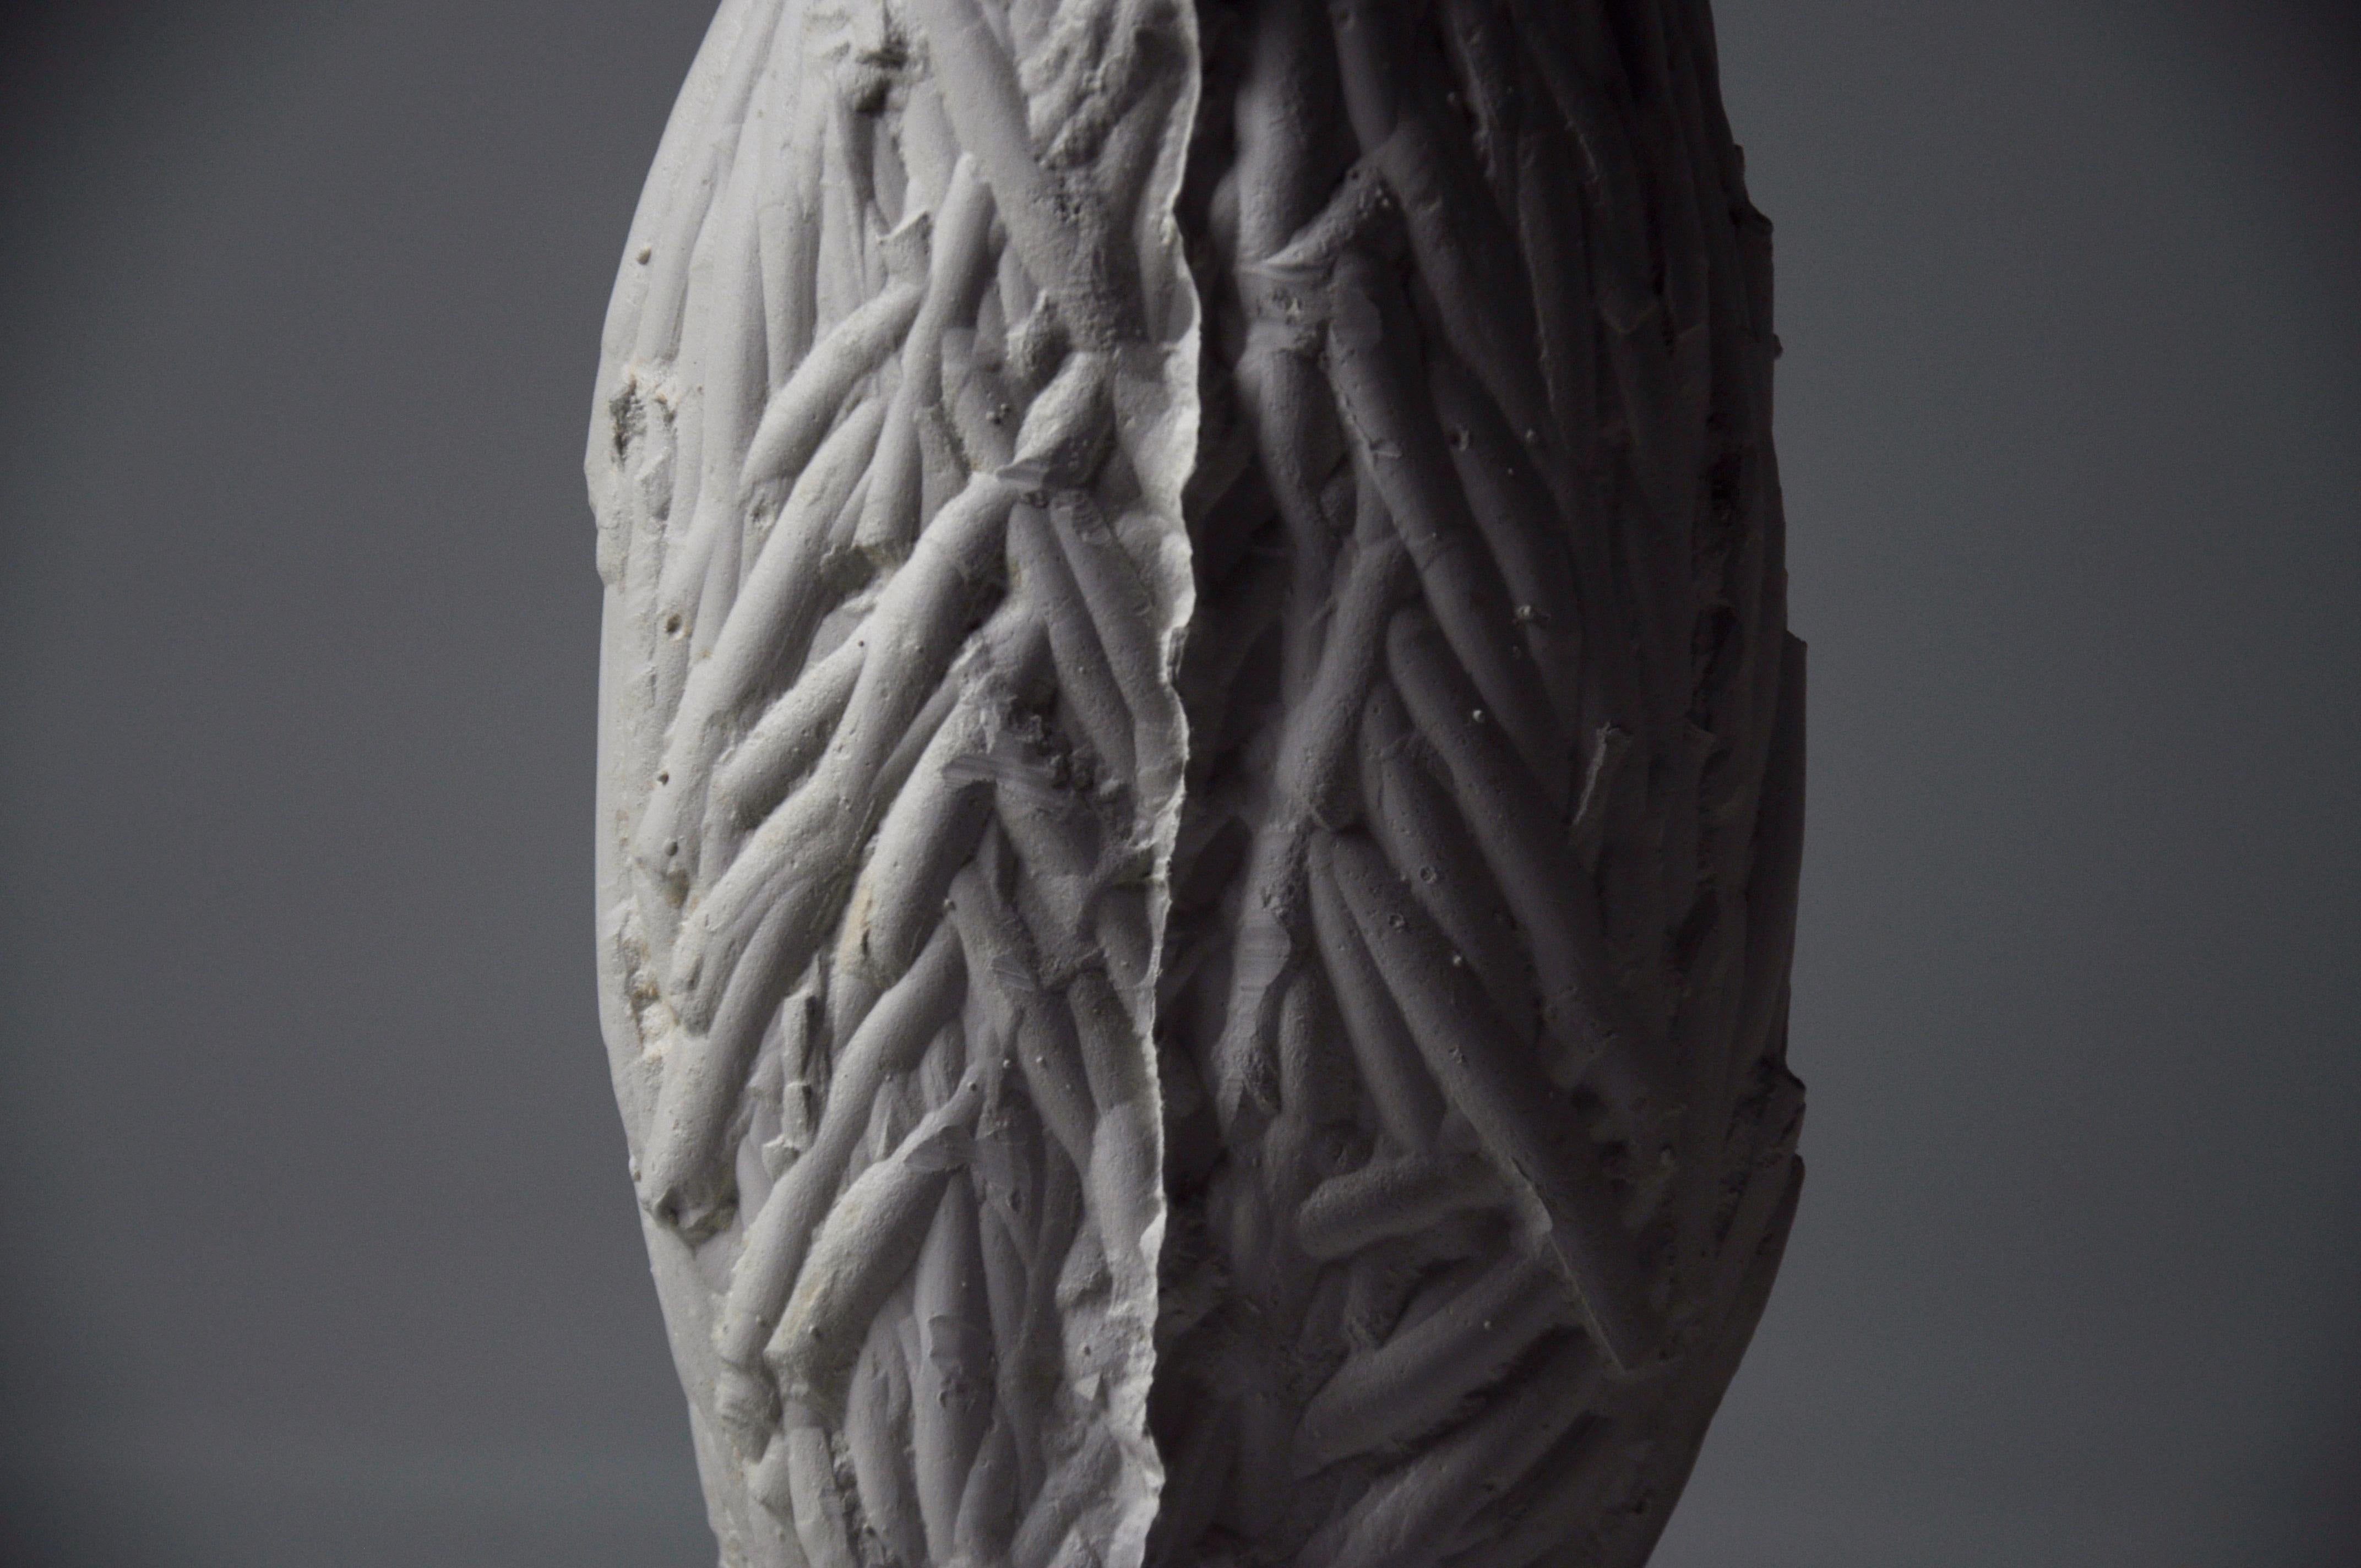 Une collection céramique d'objets fonctionnels sculpturaux inspirée par la ligne parallèle entre le processus de moulage de la céramique et la croissance et la décomposition des êtres organiques.
En expérimentant différentes manières de créer des